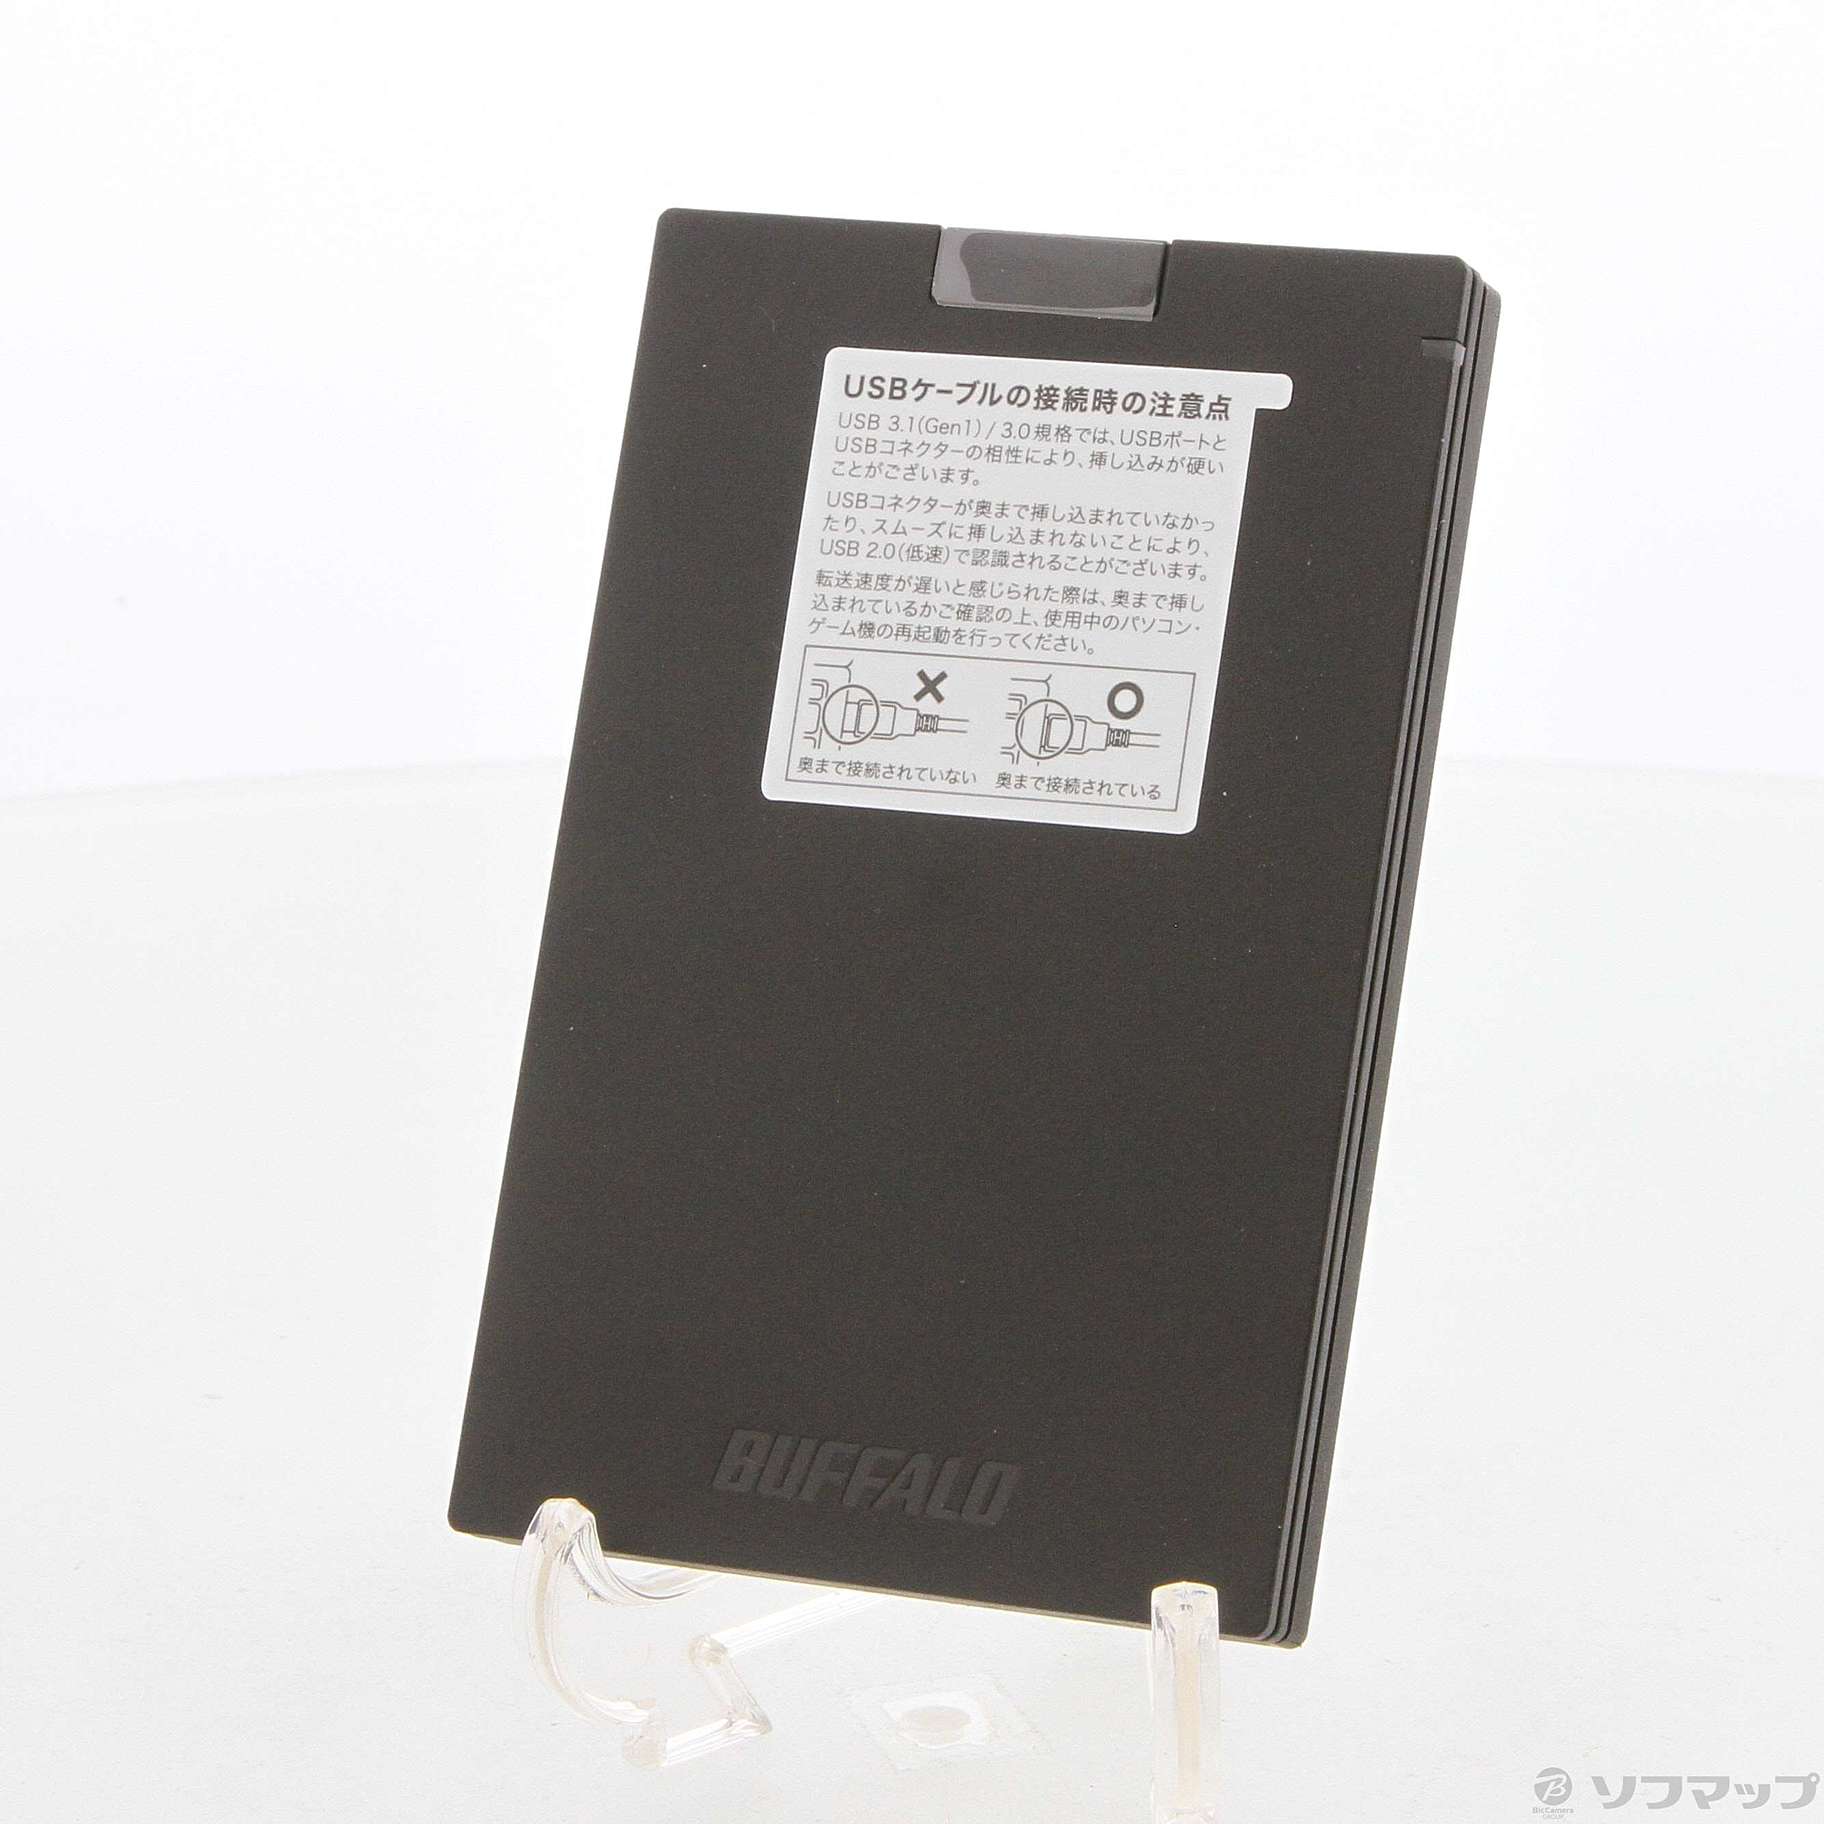 バッファローBUFFALO 外付けSSD SSD-PG960U3-BA